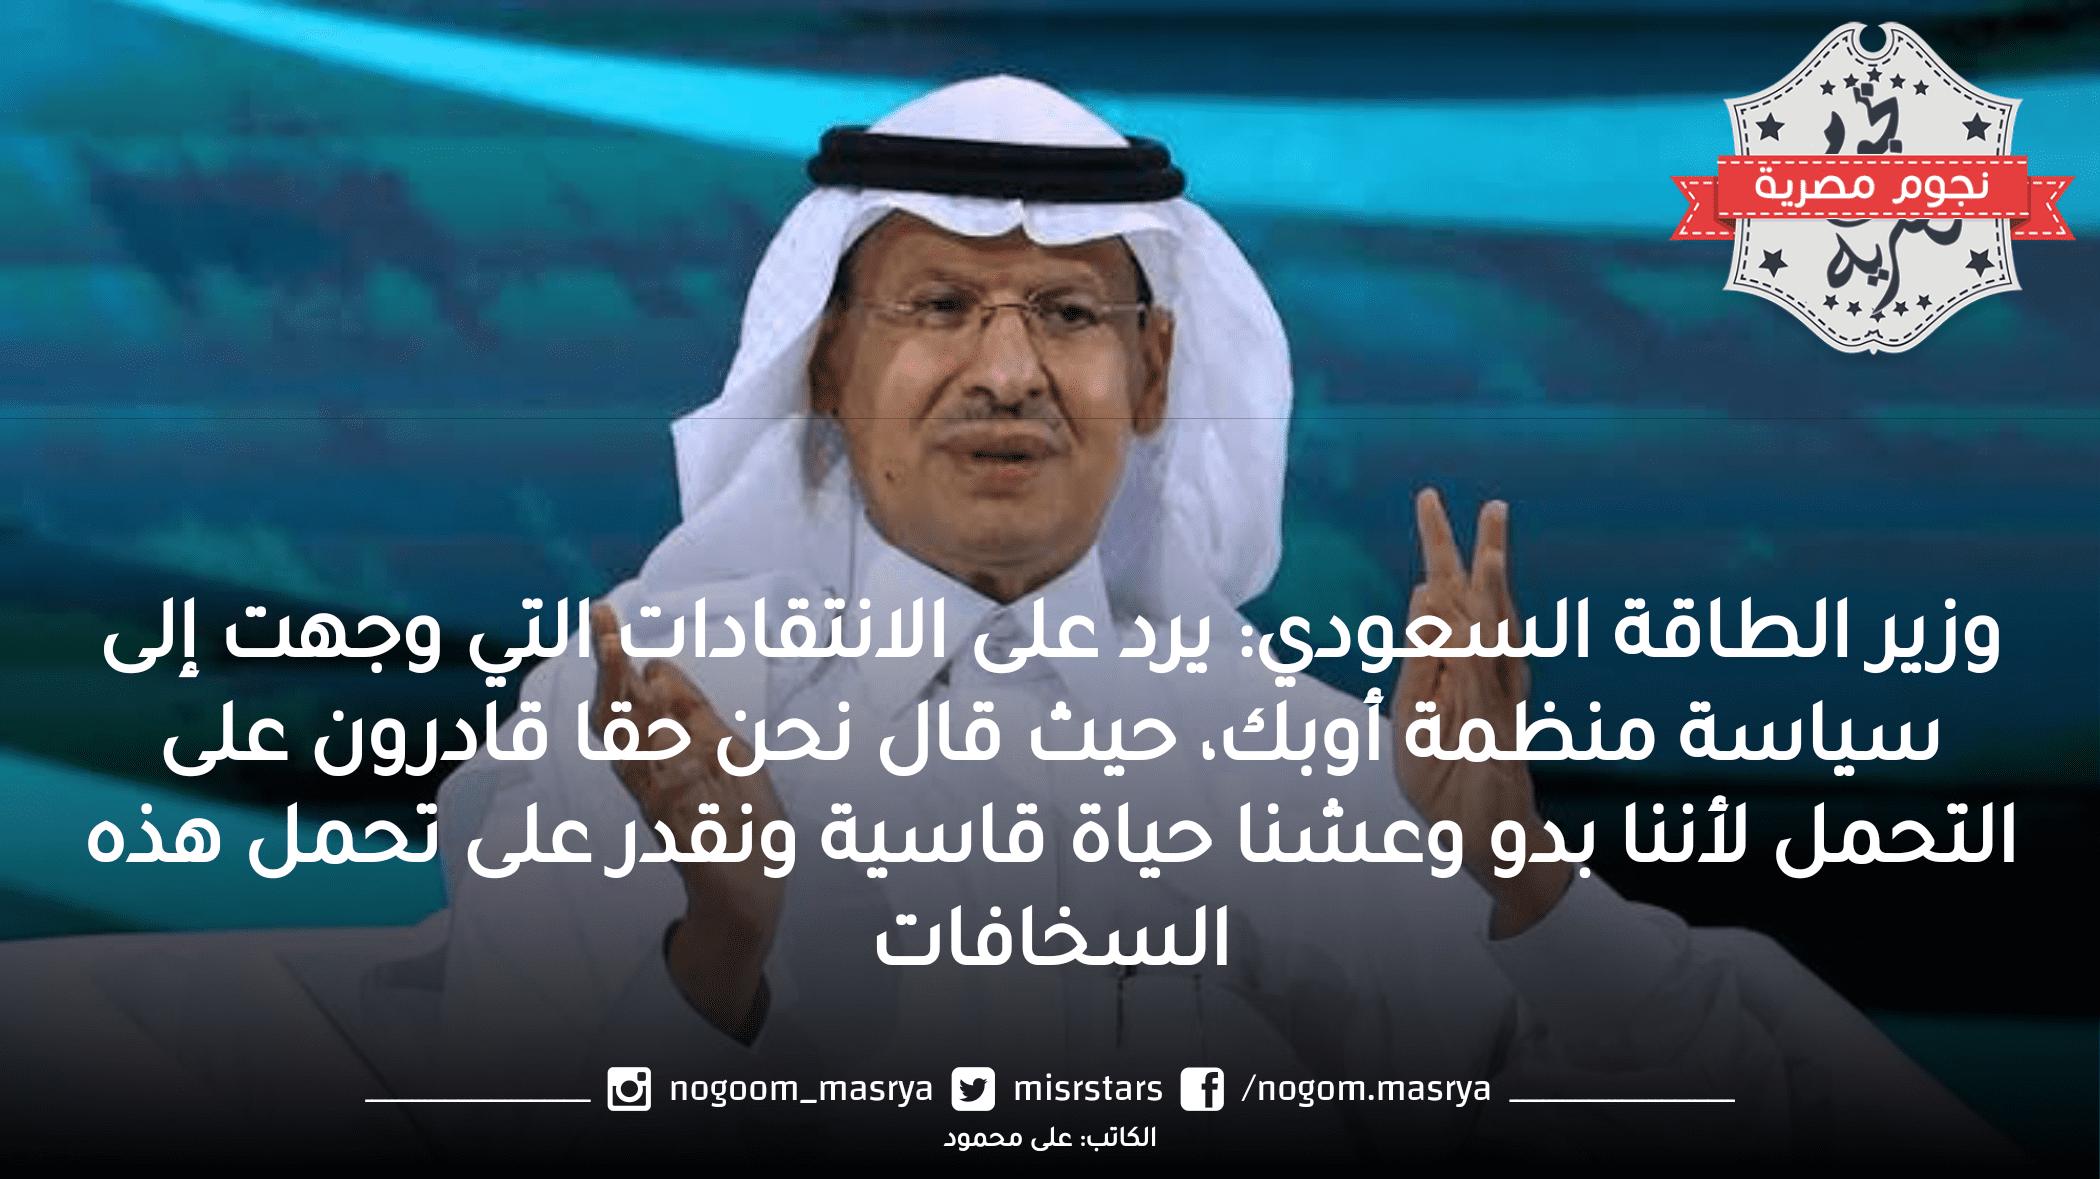 وزير الطاقة السعودي: يرد على الانتقادات التي وجهت إلى سياسة منظمة أوبك “نحن حقا قادرون على التحمل لأننا بدو وعشنا حياة قاسية ونقدر على تحمل 